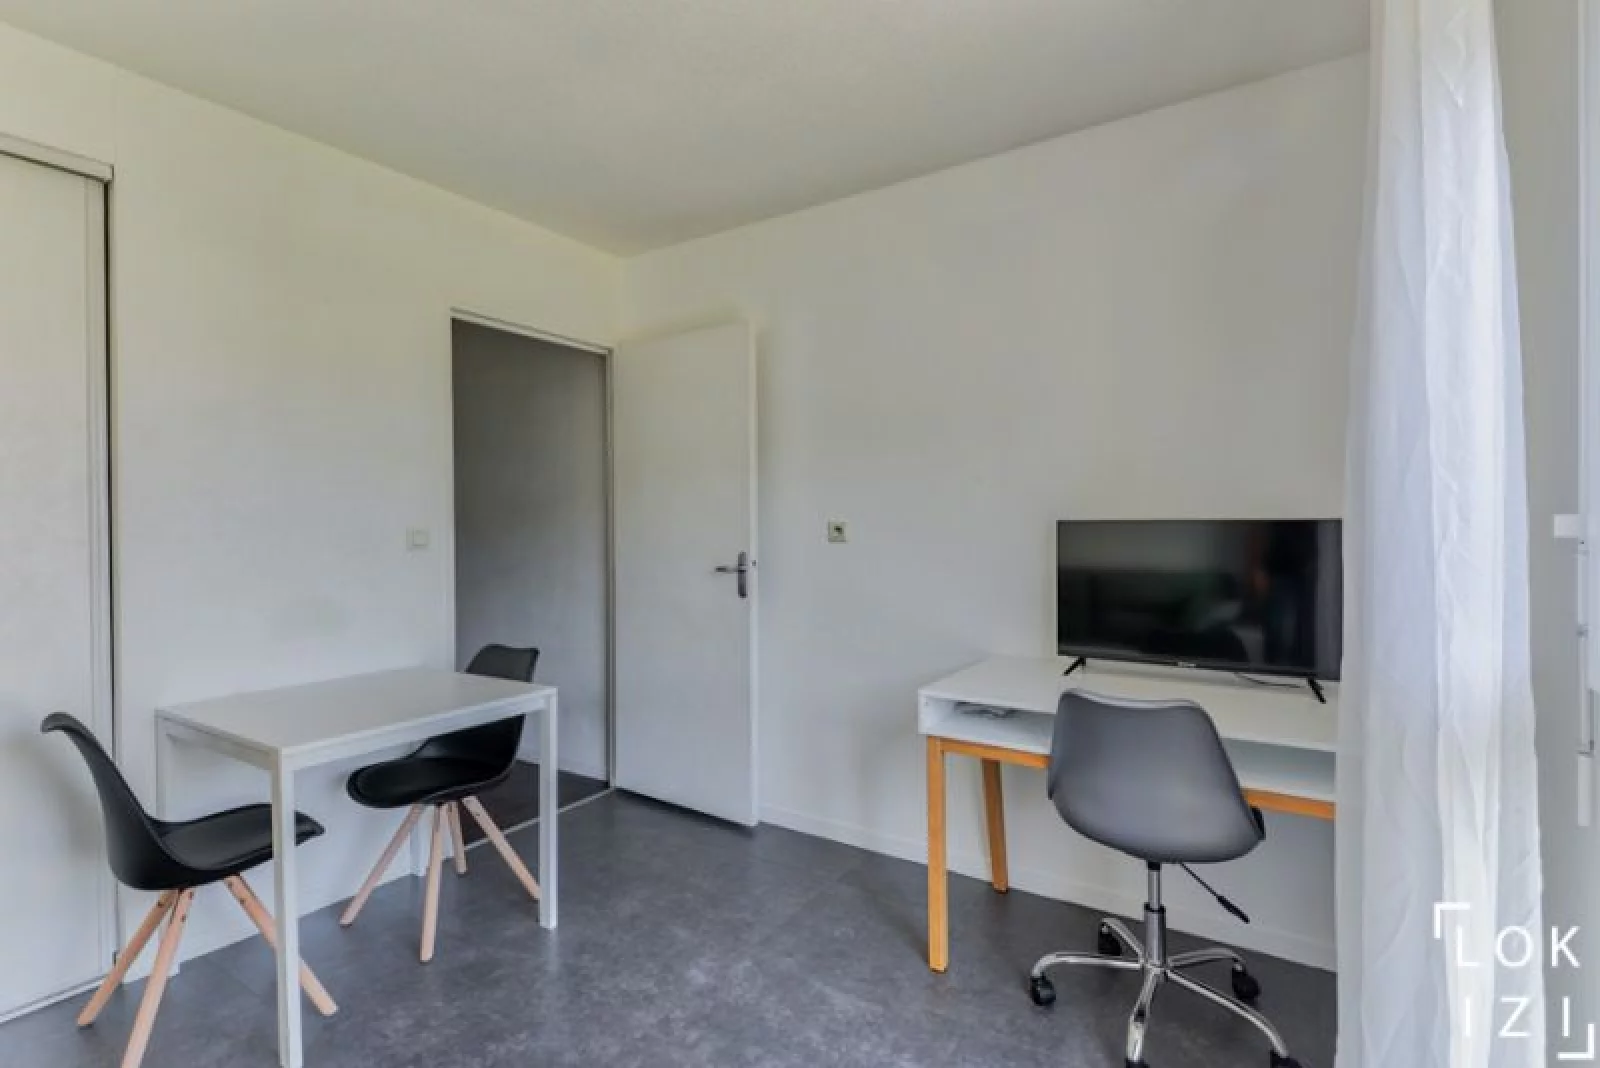 Location studio meublé 19m² (Paris est - Bry sur Marne)